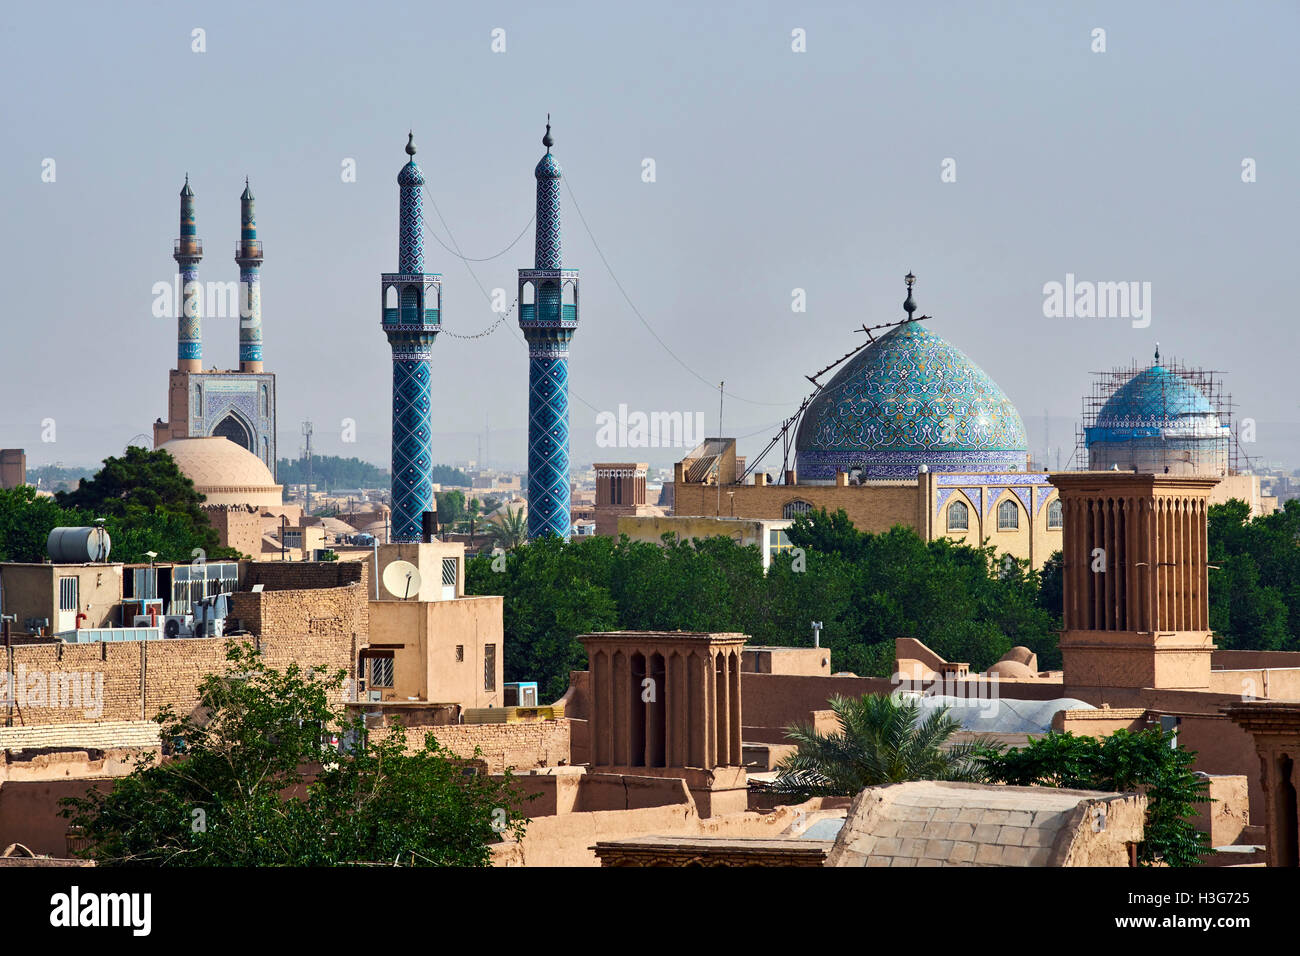 La province de Yazd, Iran, Yazd, mosquée de vendredi, paysage urbain, badgirs ou tours à vent Banque D'Images